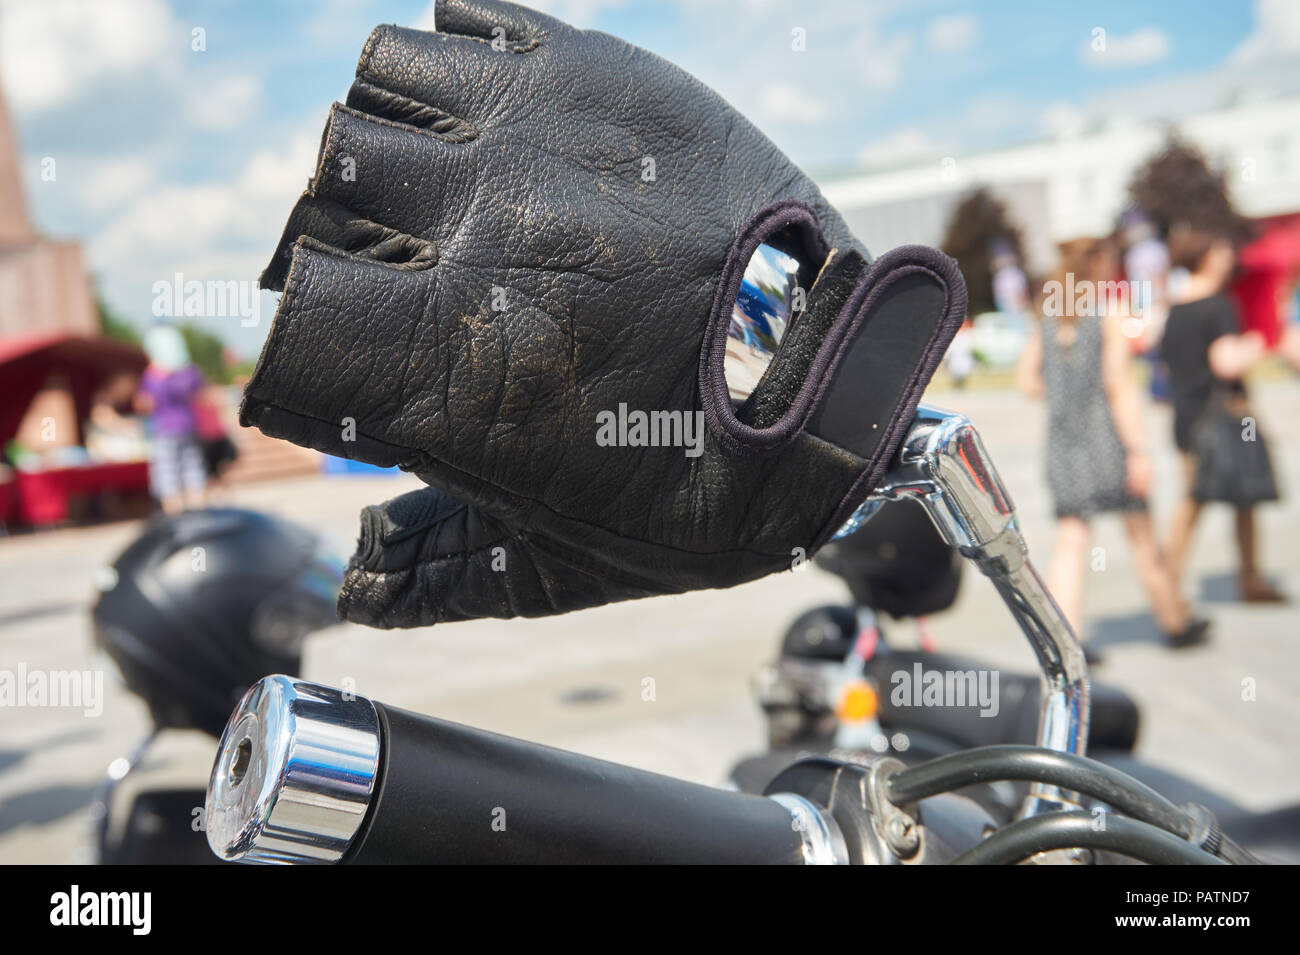 Gant mitaine en cuir noir ou sur le guidon d'une moto garée à l'extérieur  de la ville dans une vue en gros plan Photo Stock - Alamy